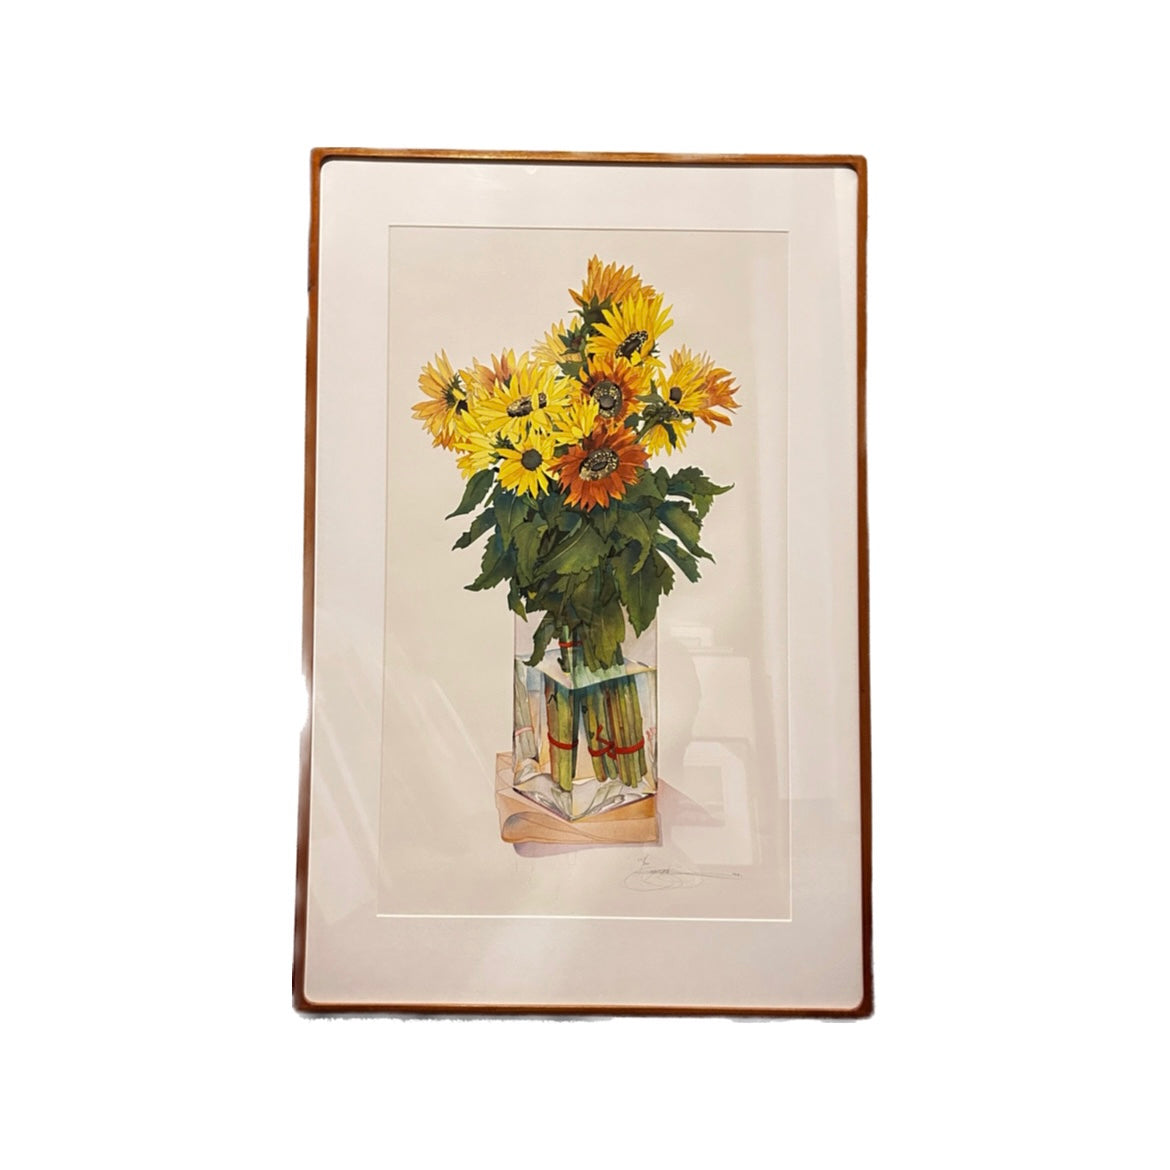 Sunflowers by Gary Bukovnik, 1980 (30.5" x 47")